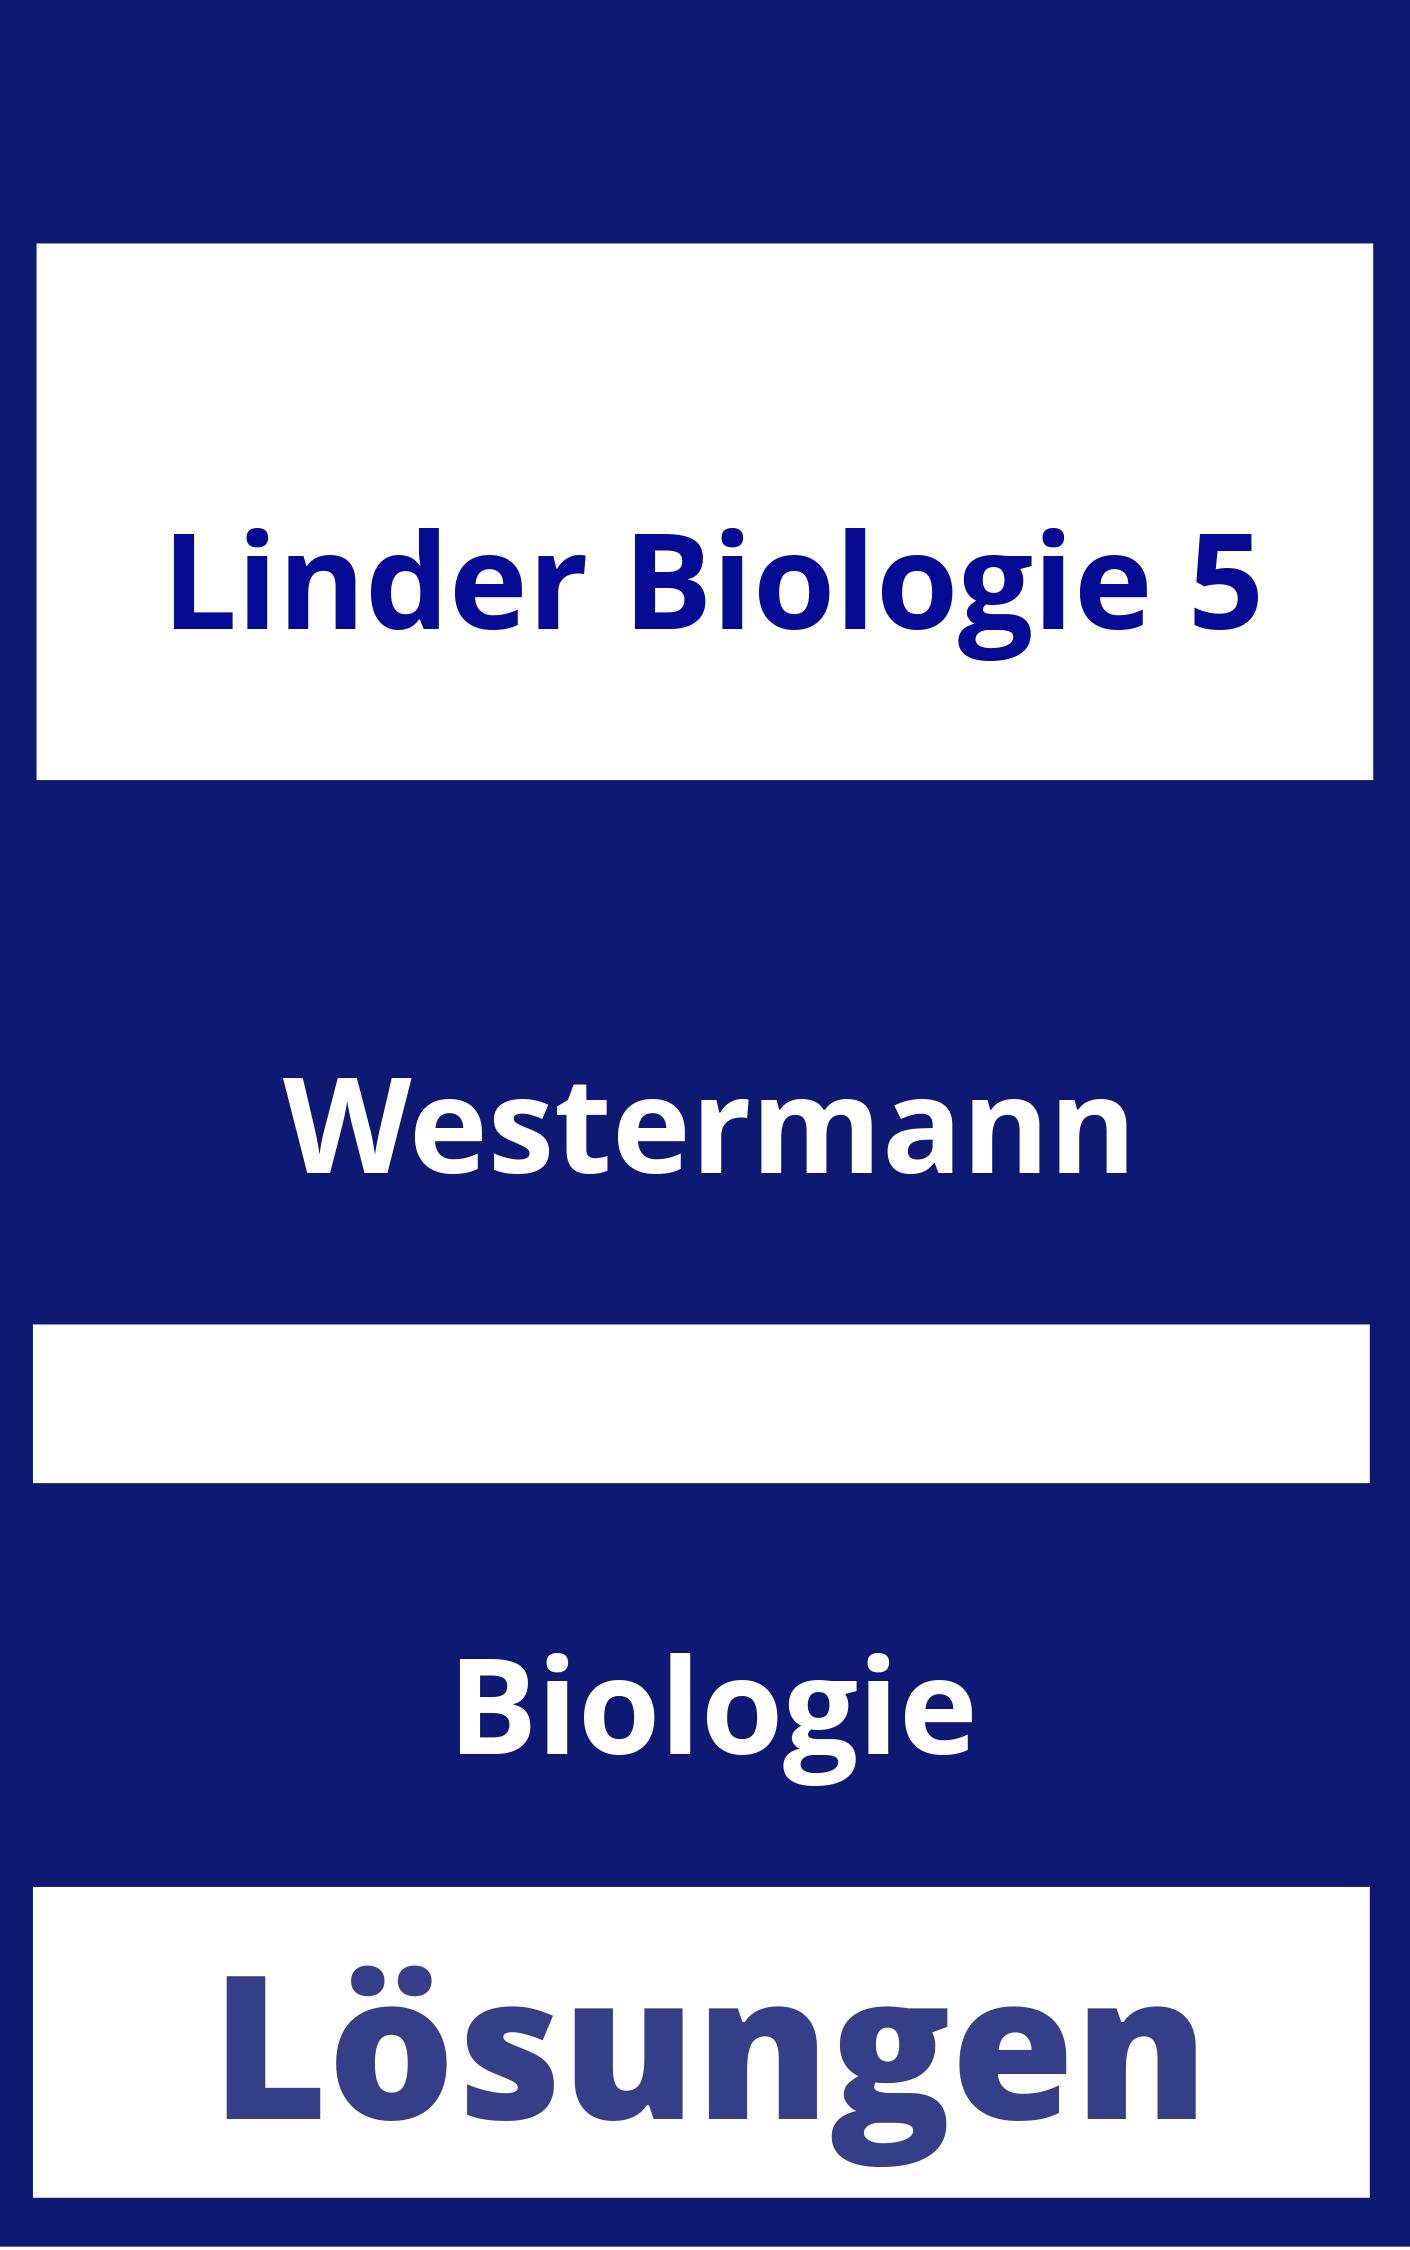 Linder Biologie 5